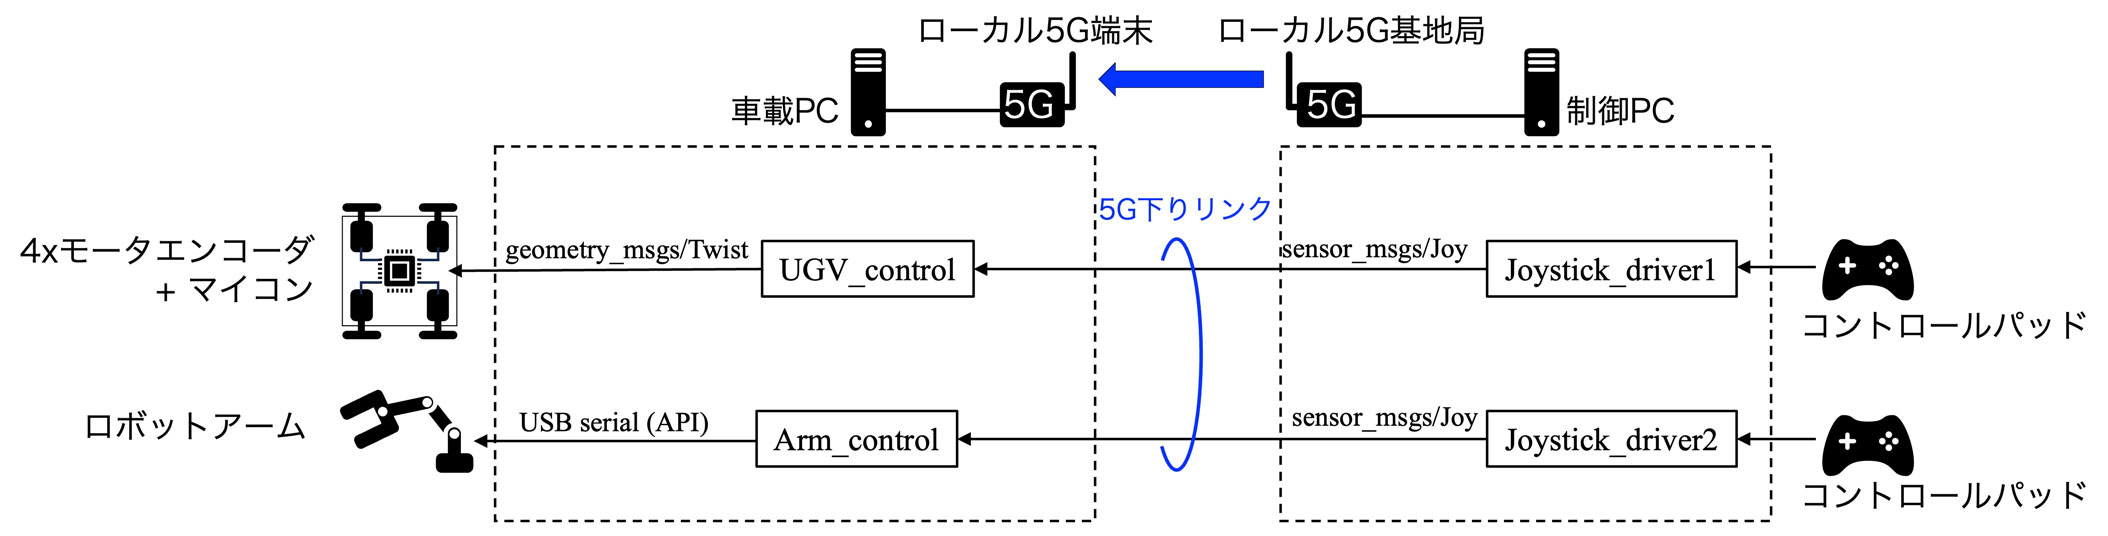 図5　本装置の制御構成[4]　（b）下りリンク（操縦席から無人搬送車）の制御